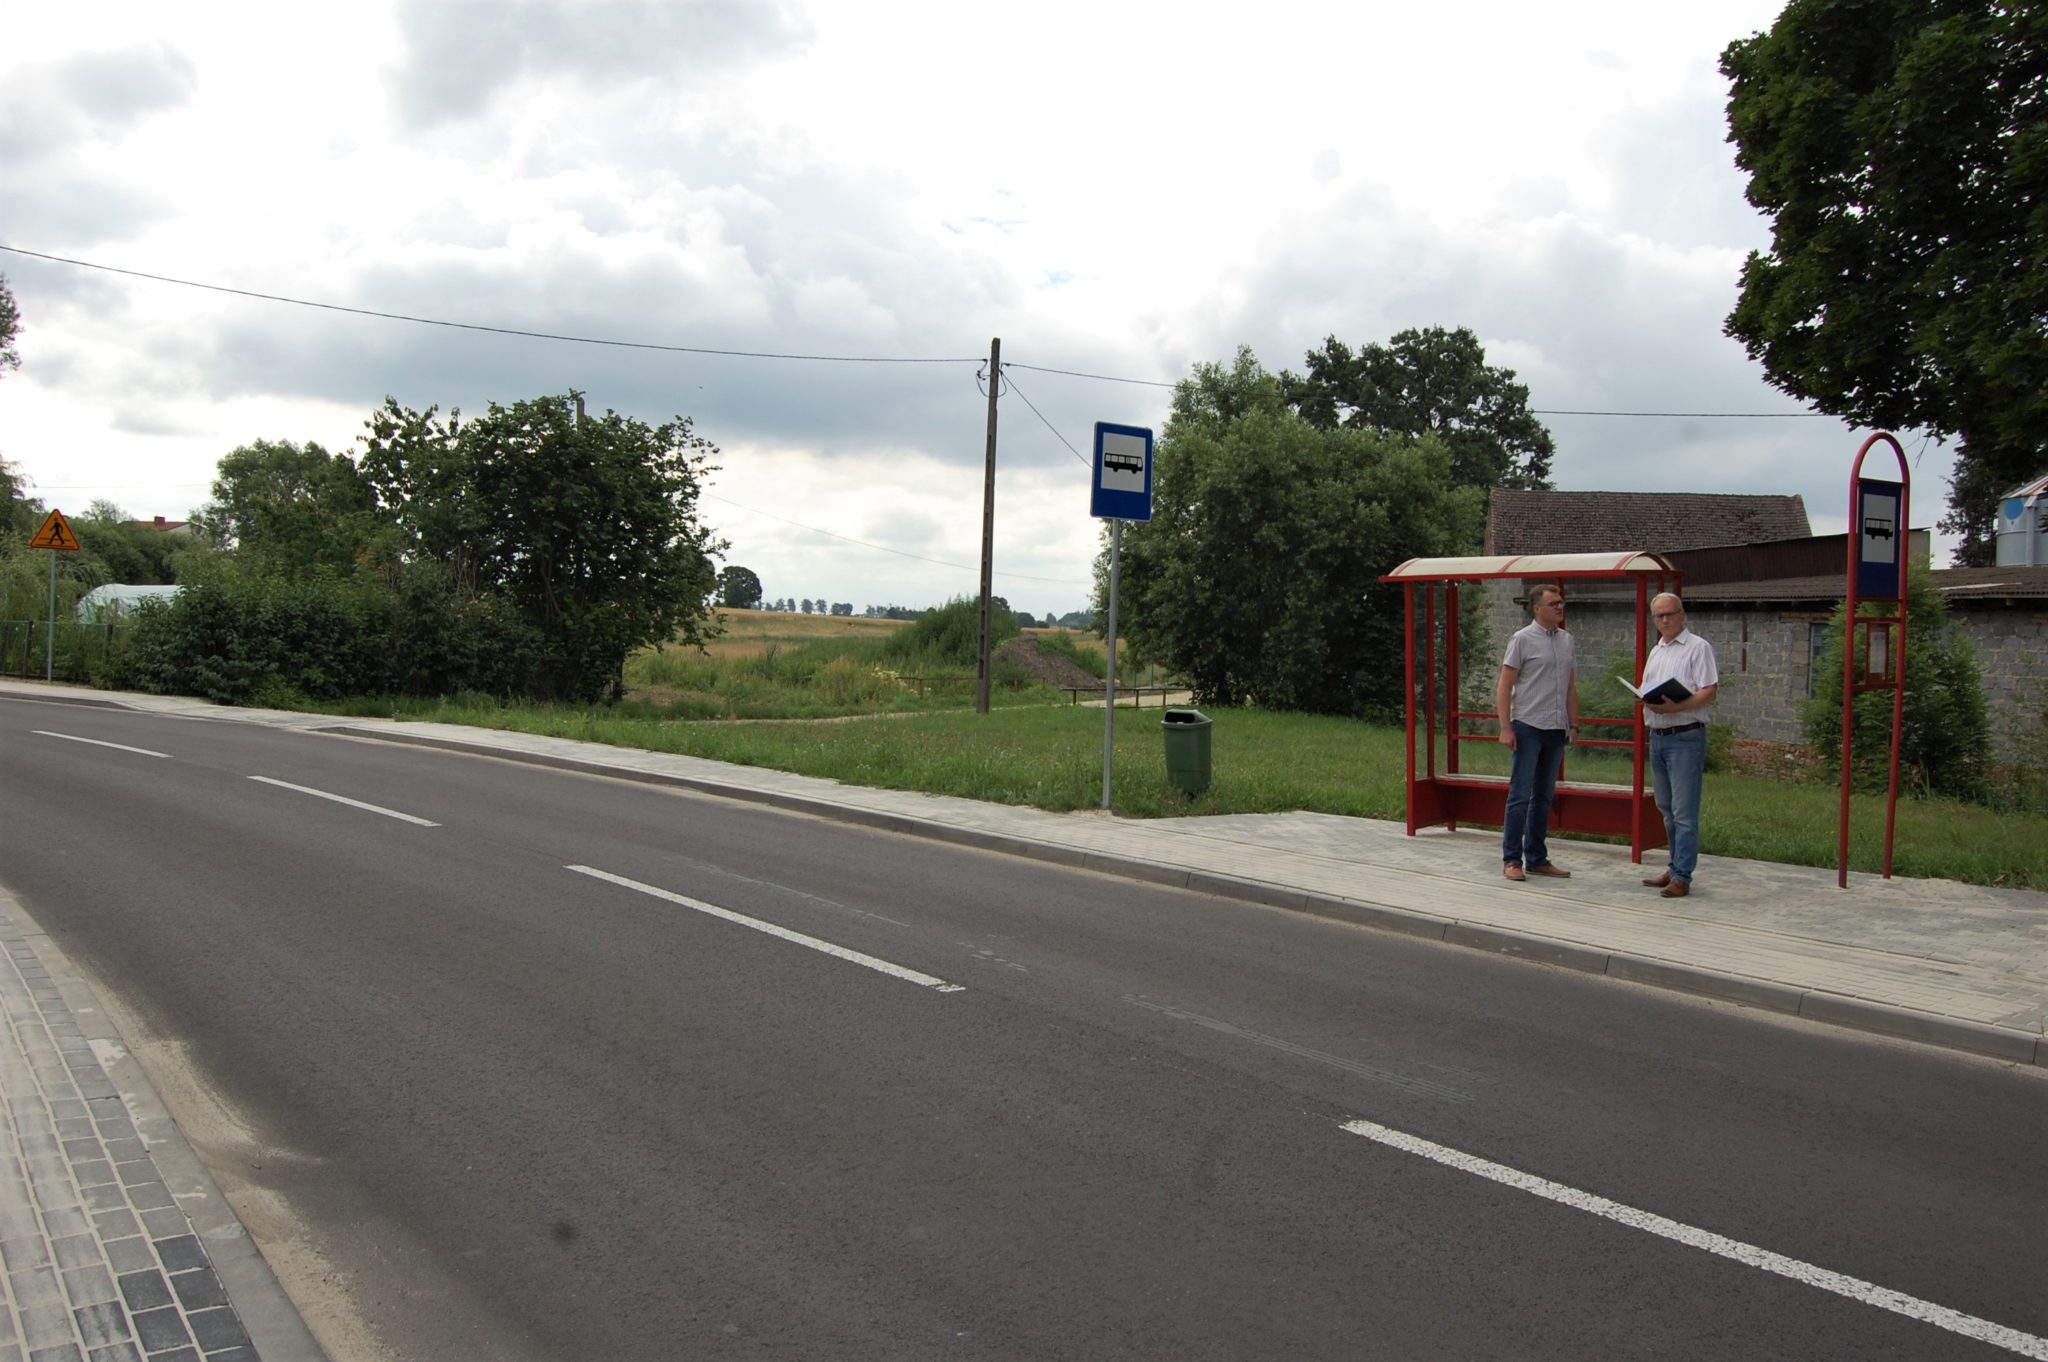 widok na asfaltową drogę z brukowanym chodnikiem, w oddali dwoje mężczyzn przy przystanku autobusowym